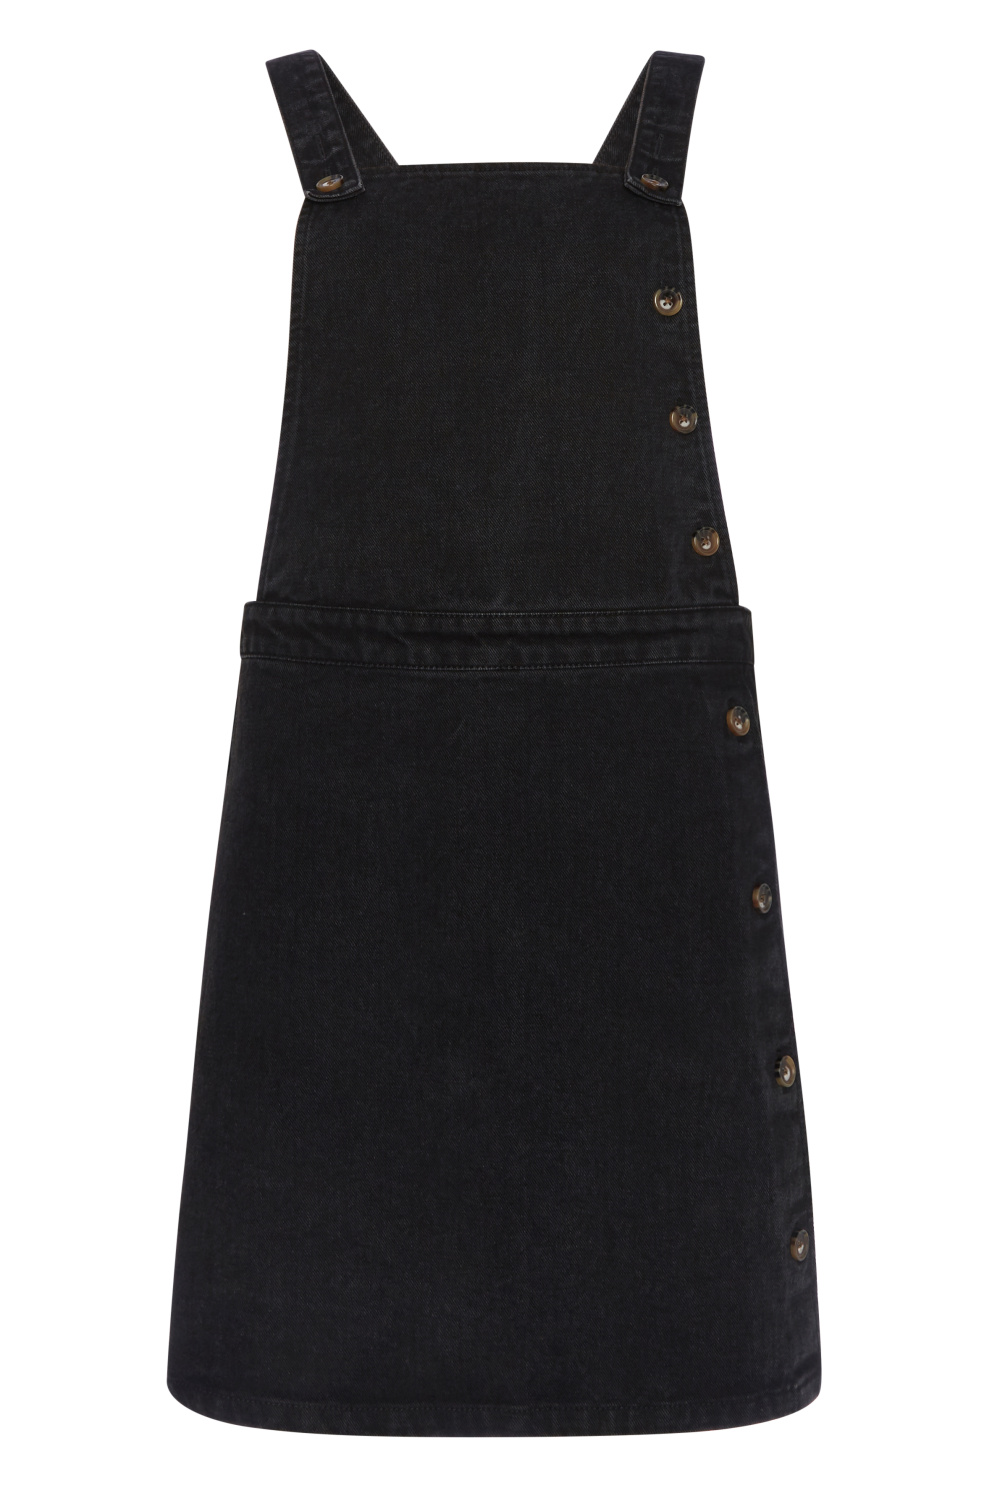 Černá laclová sukně s knoflíky, F&amp;F, 599 Kč
